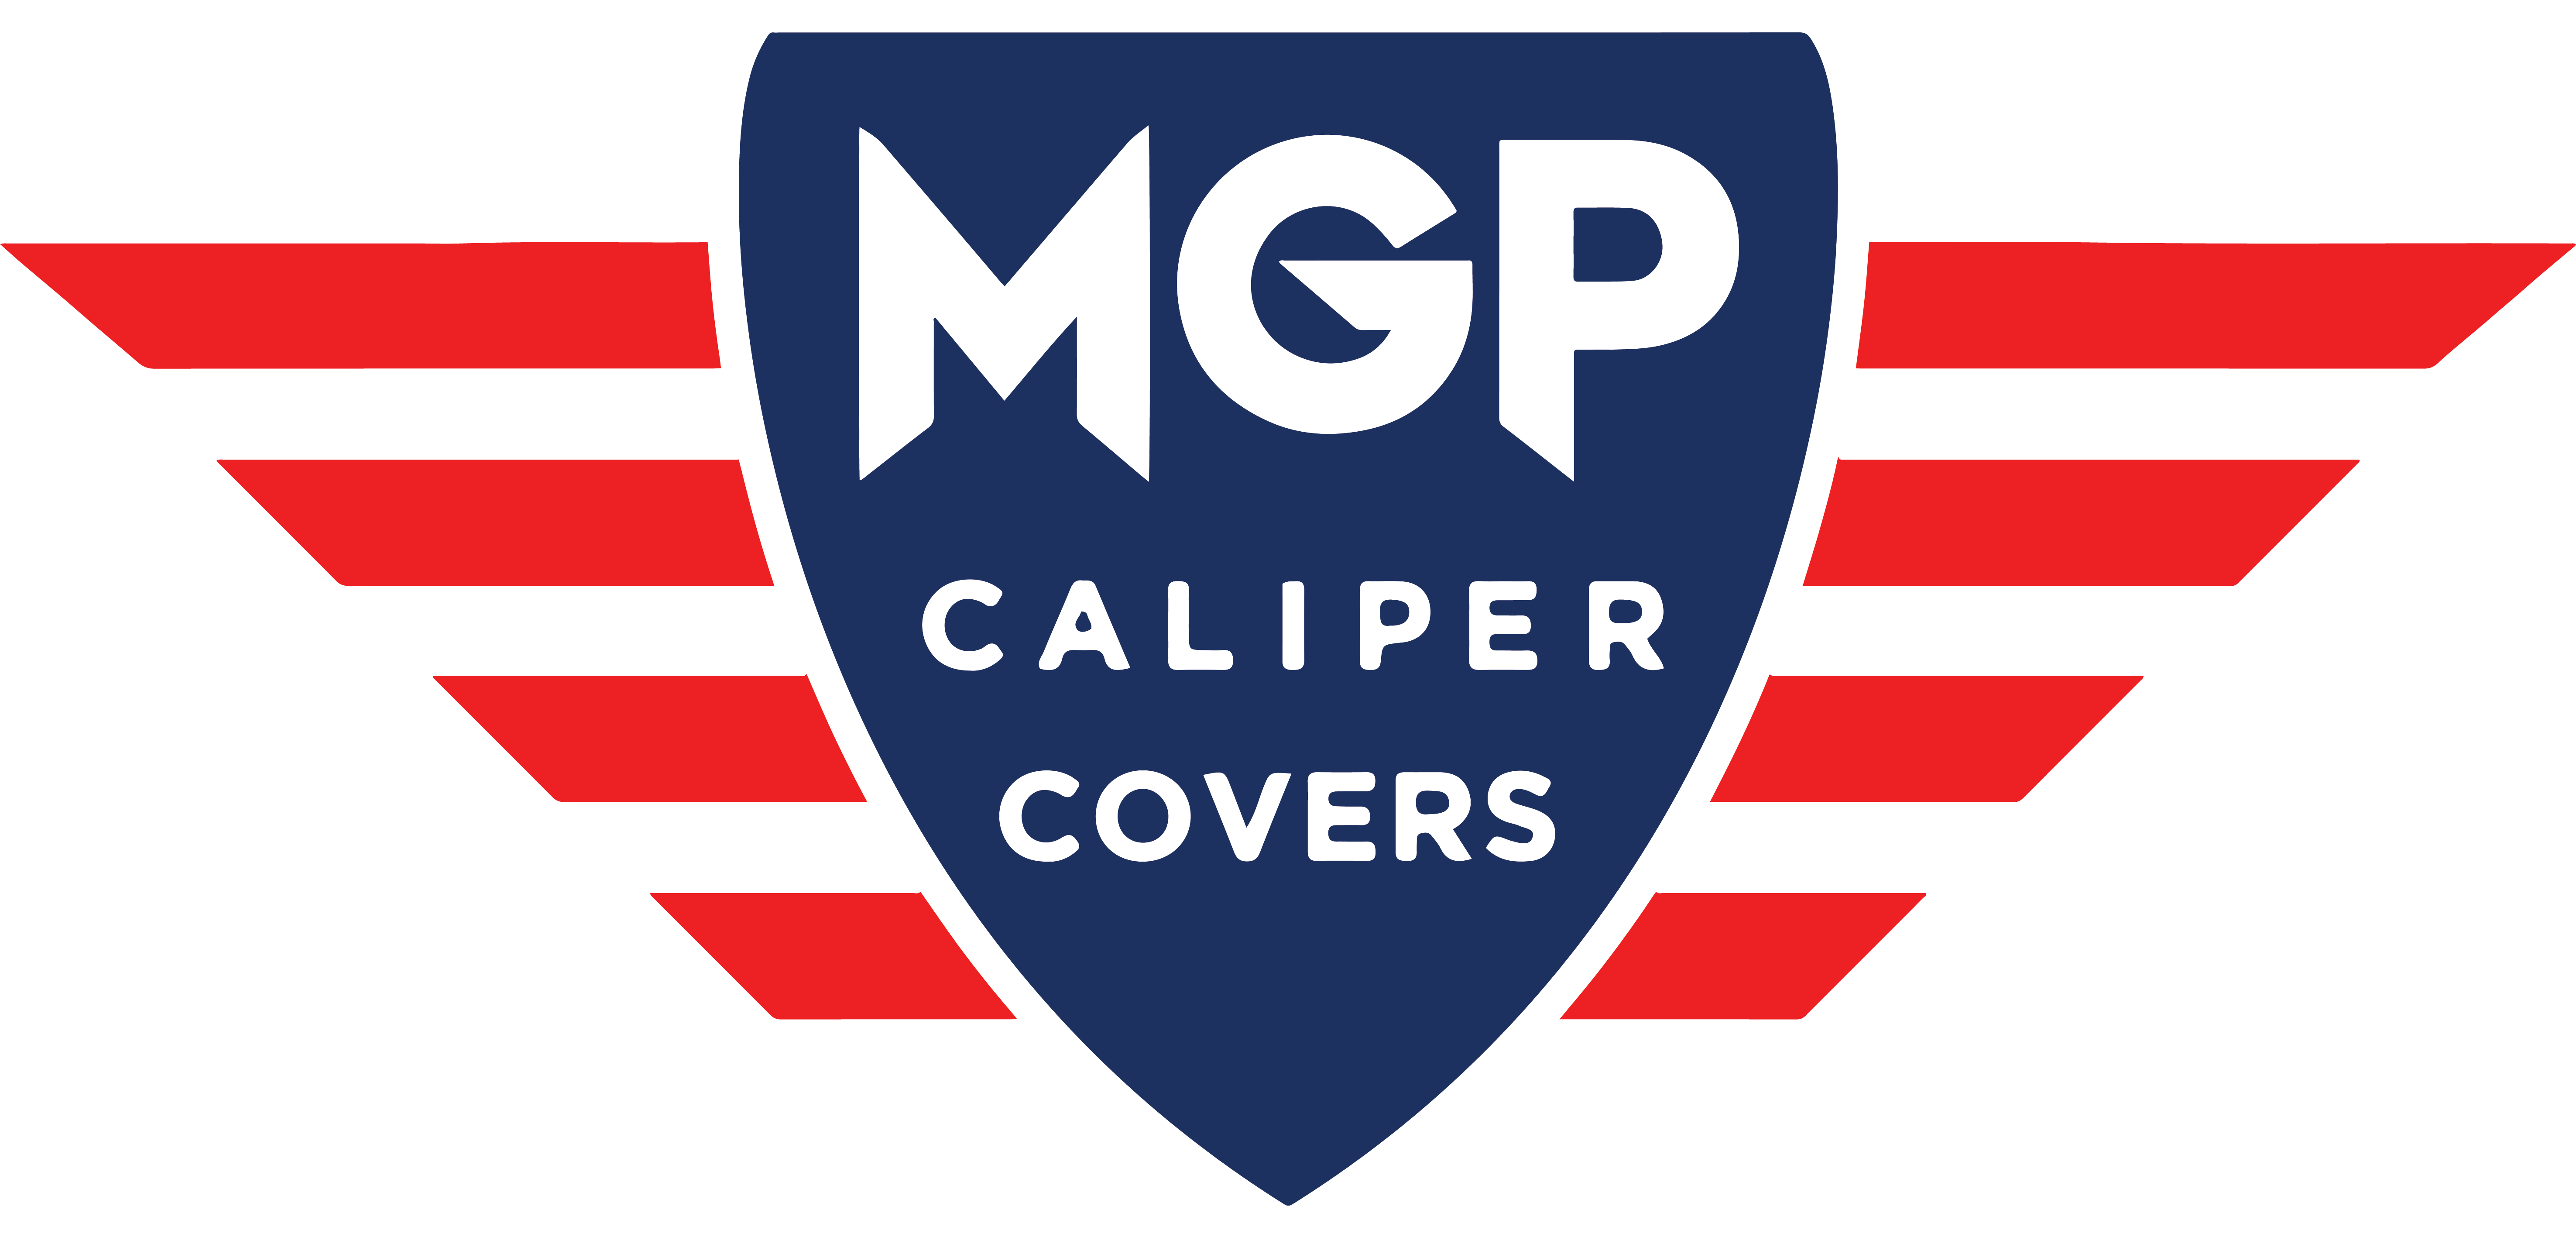 Homepage - MGP Caliper Covers